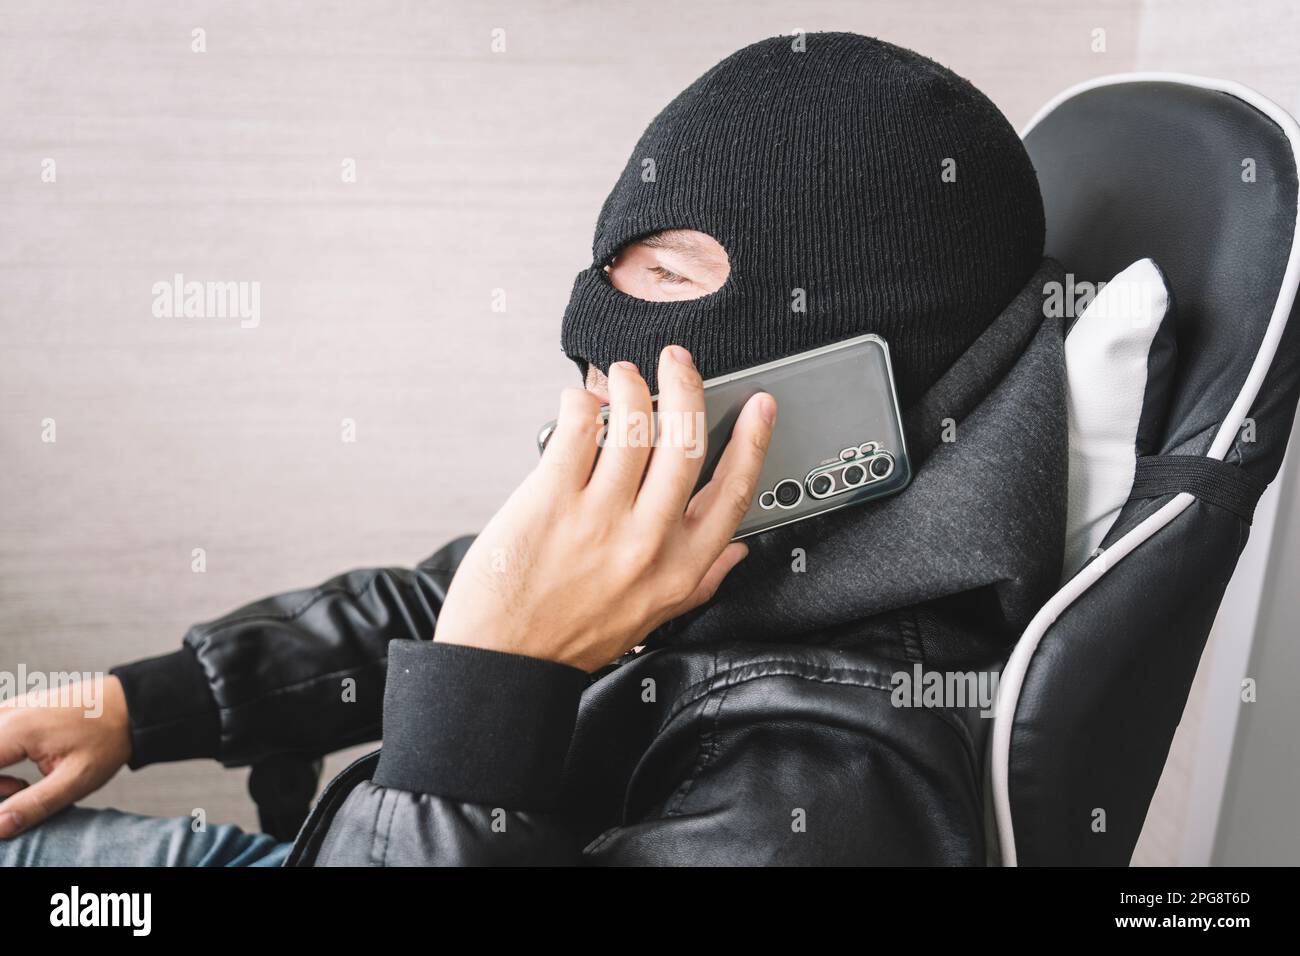 Le voleur fait un geste de téléphone. Le concept de terrorisme et de fraude par téléphone. Un homme masqué passe un appel téléphonique. Banque D'Images